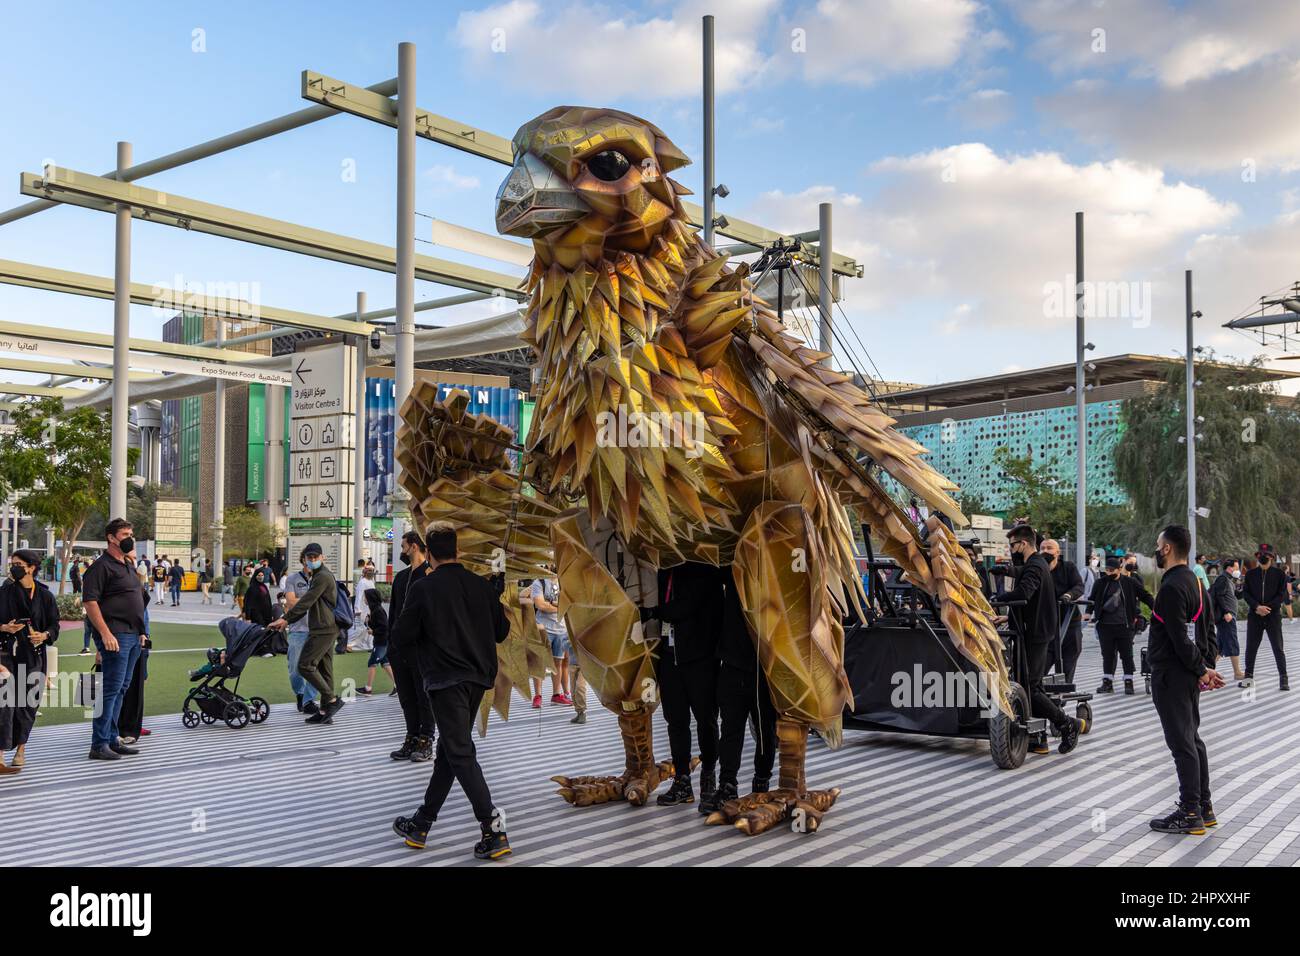 Un gigante meccanico Falcon, l’uccello nazionale degli Emirati Arabi Uniti, al Dubai EXPO 2020 negli Emirati Arabi Uniti. Foto Stock